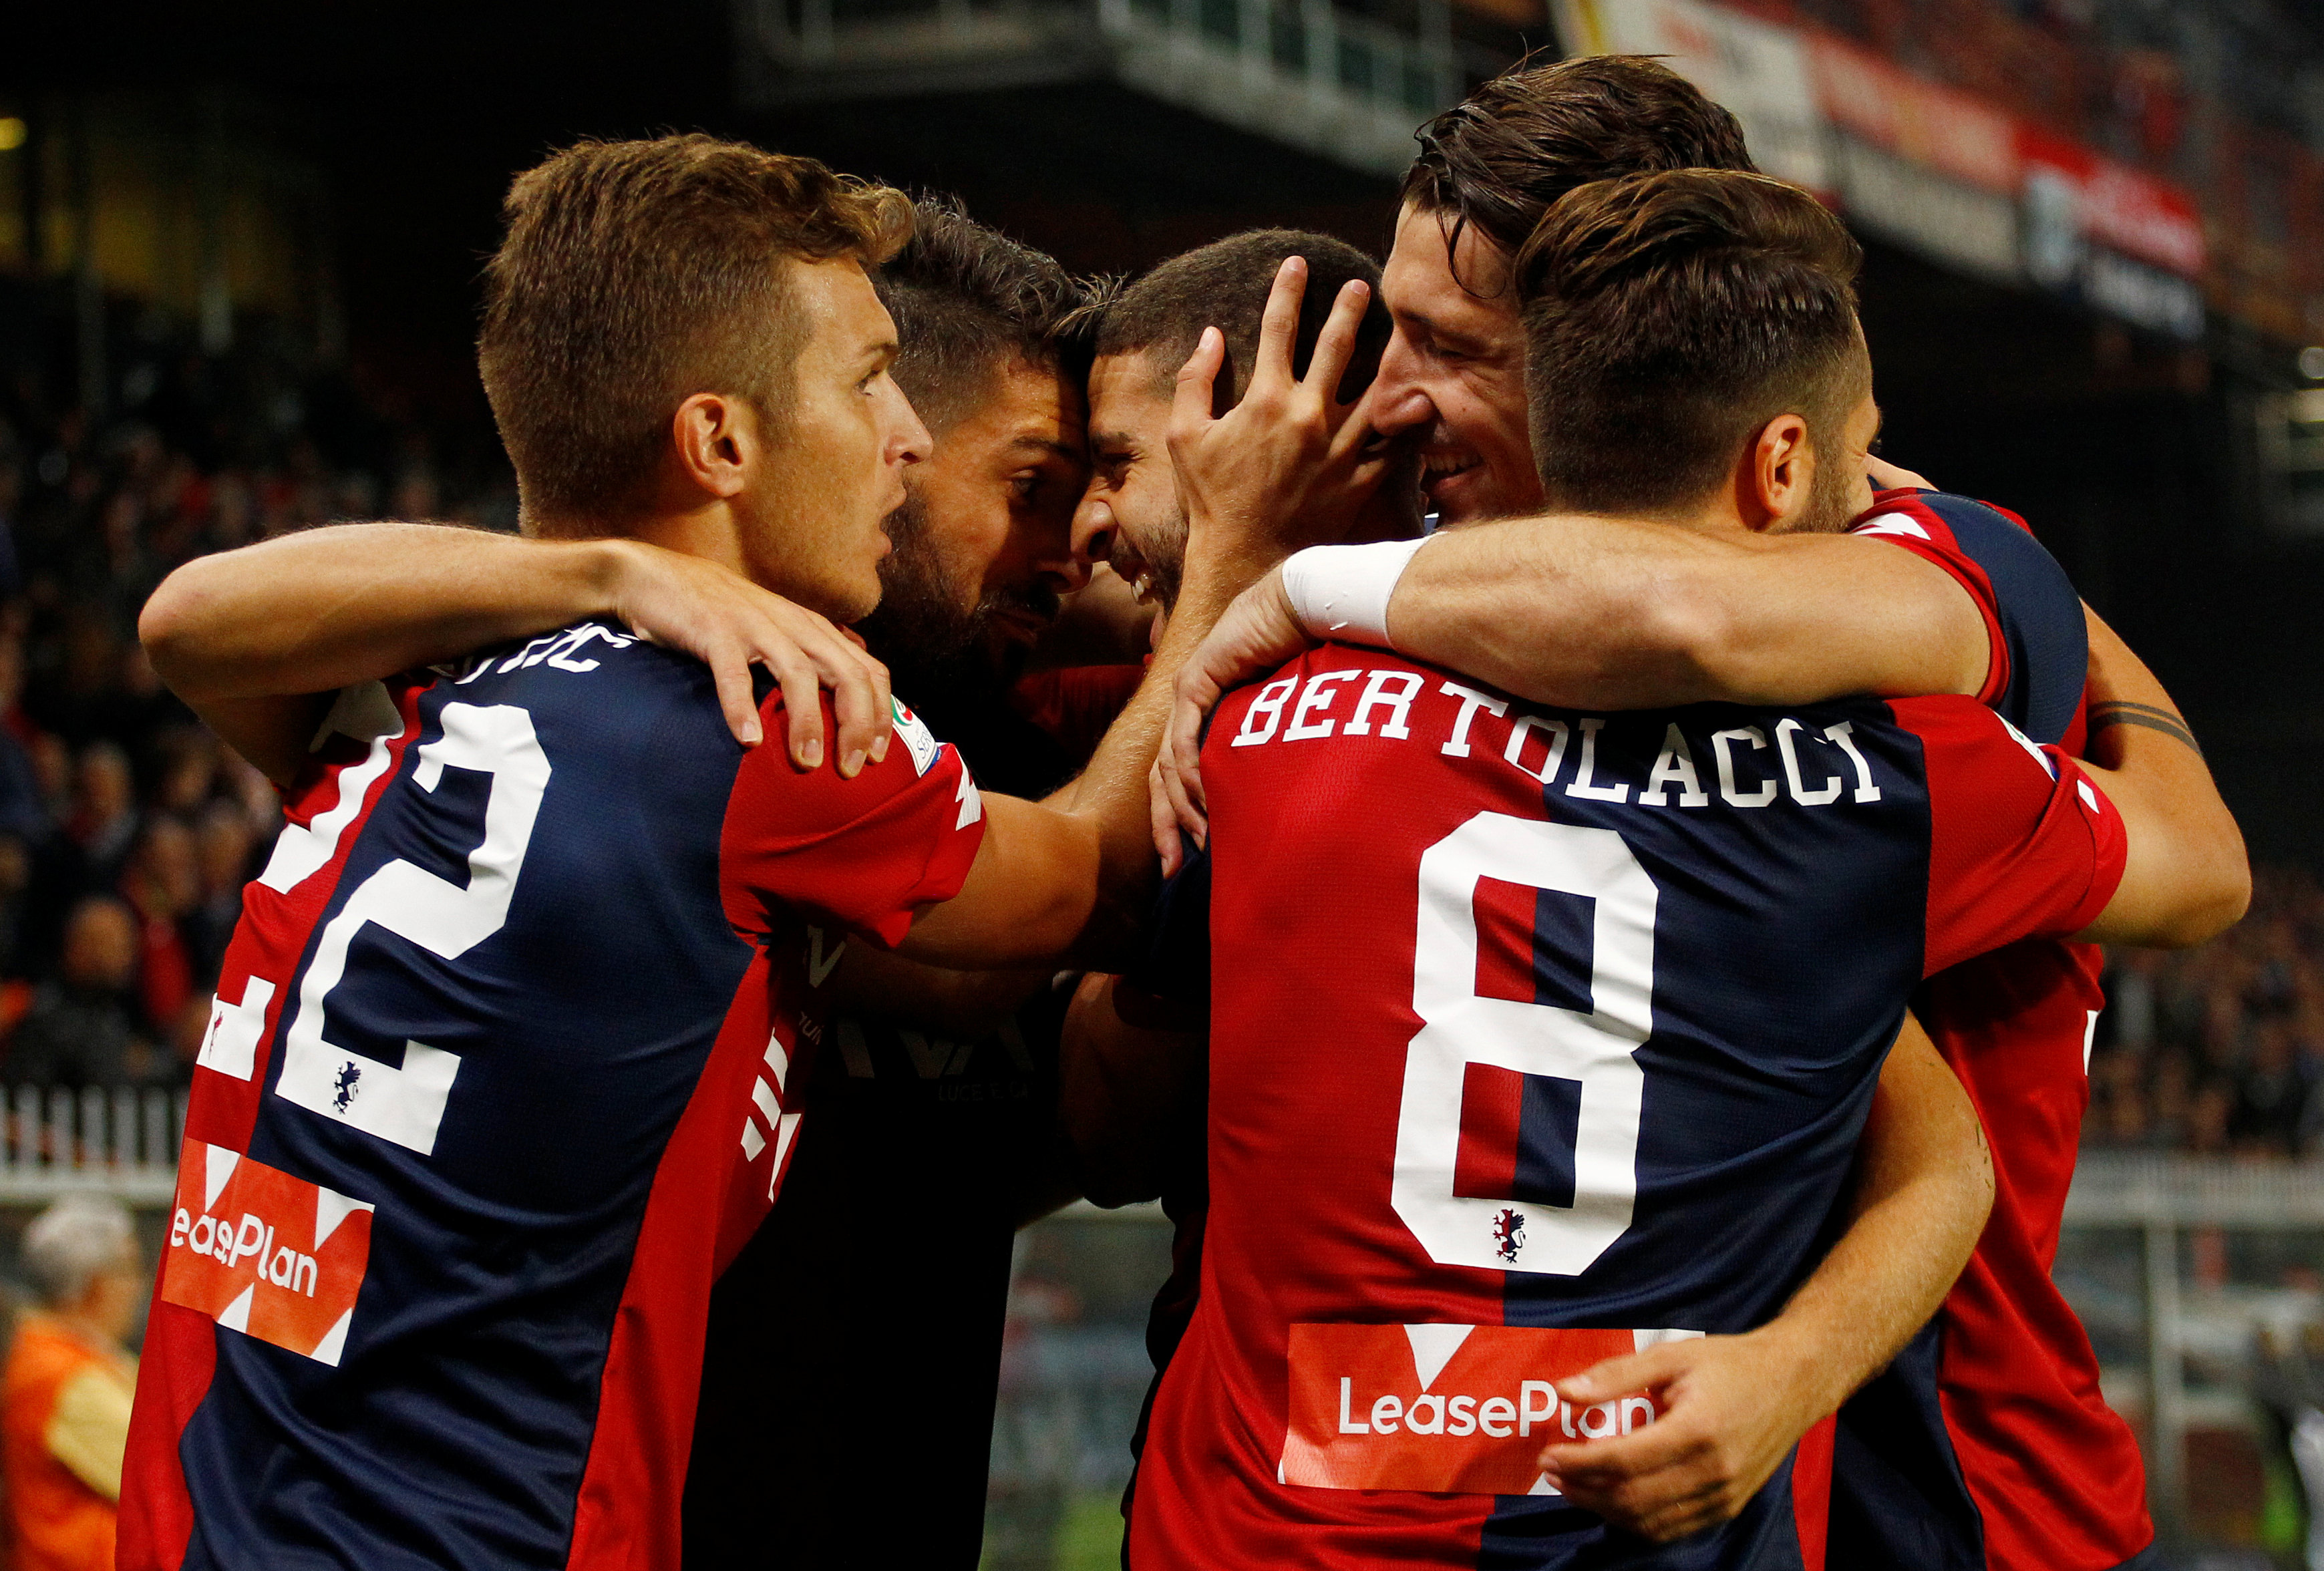 Niềm vui của các cầu thủ Genoa sau khi có bàn mở tỉ số. Ảnh: REUTERS